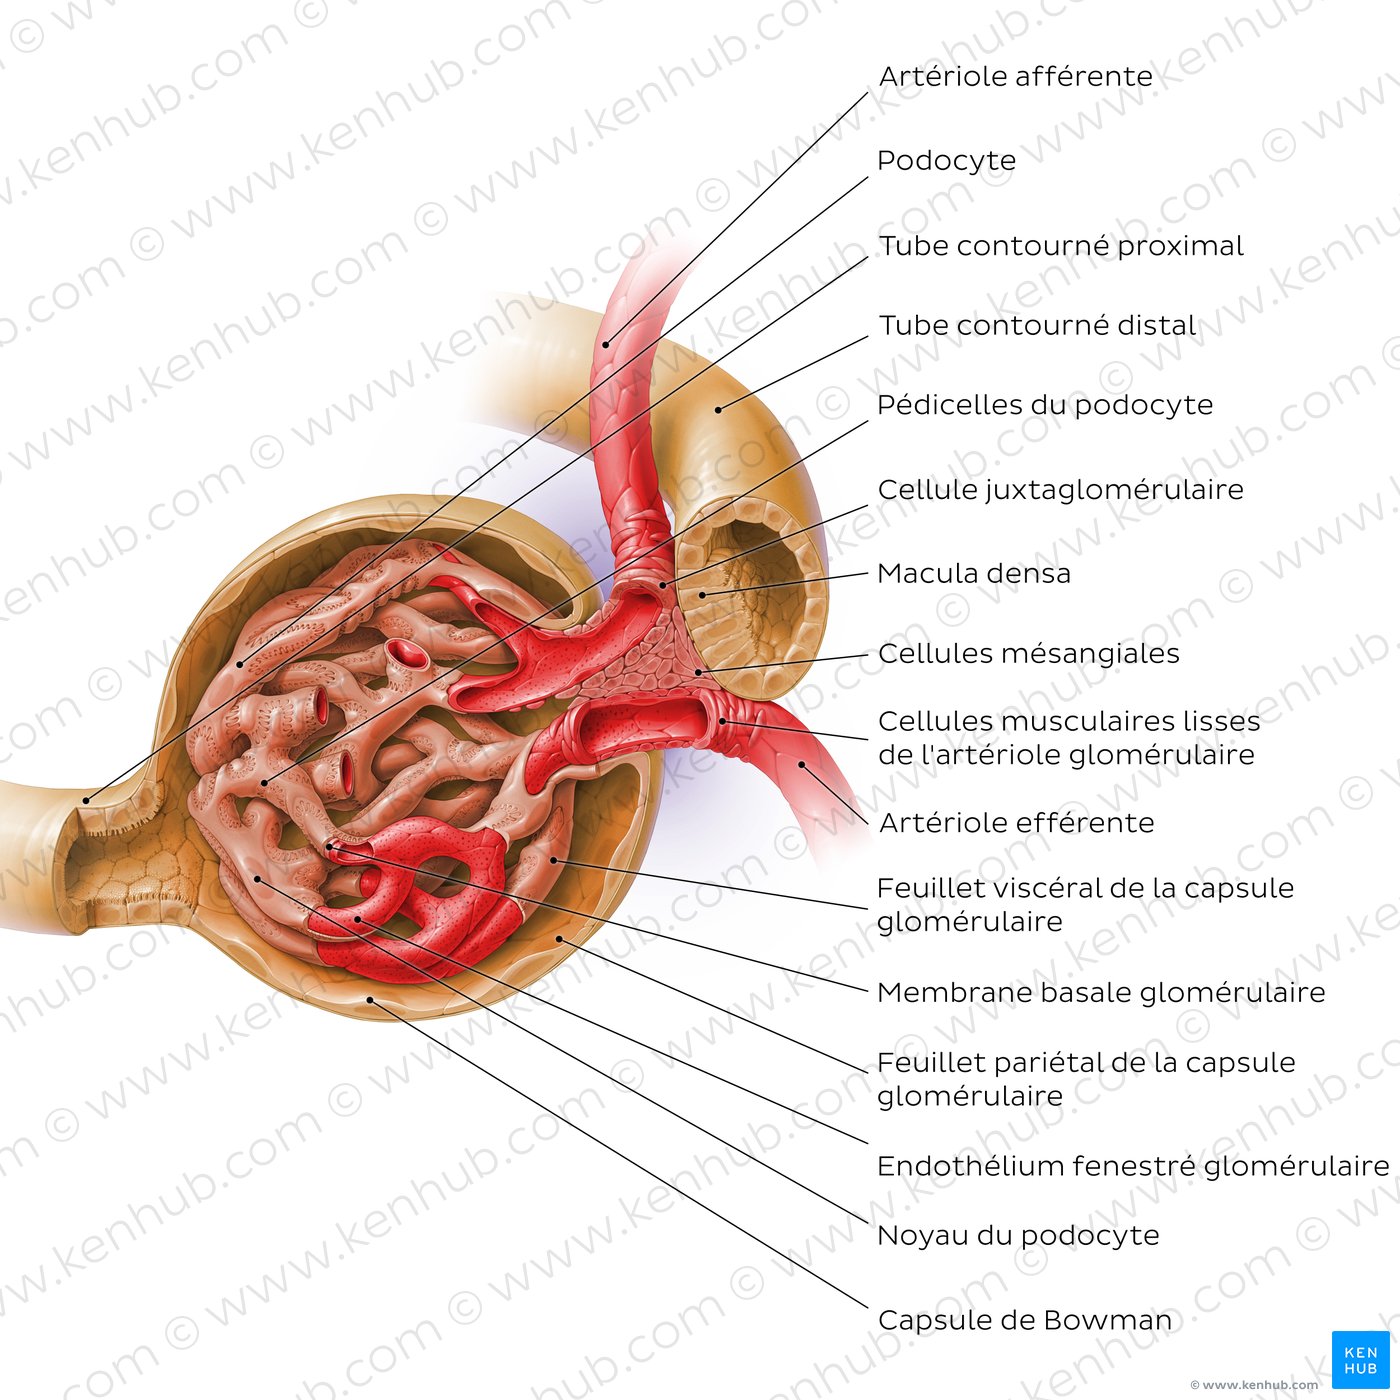 Structure histologique du corpuscule rénal (schéma)